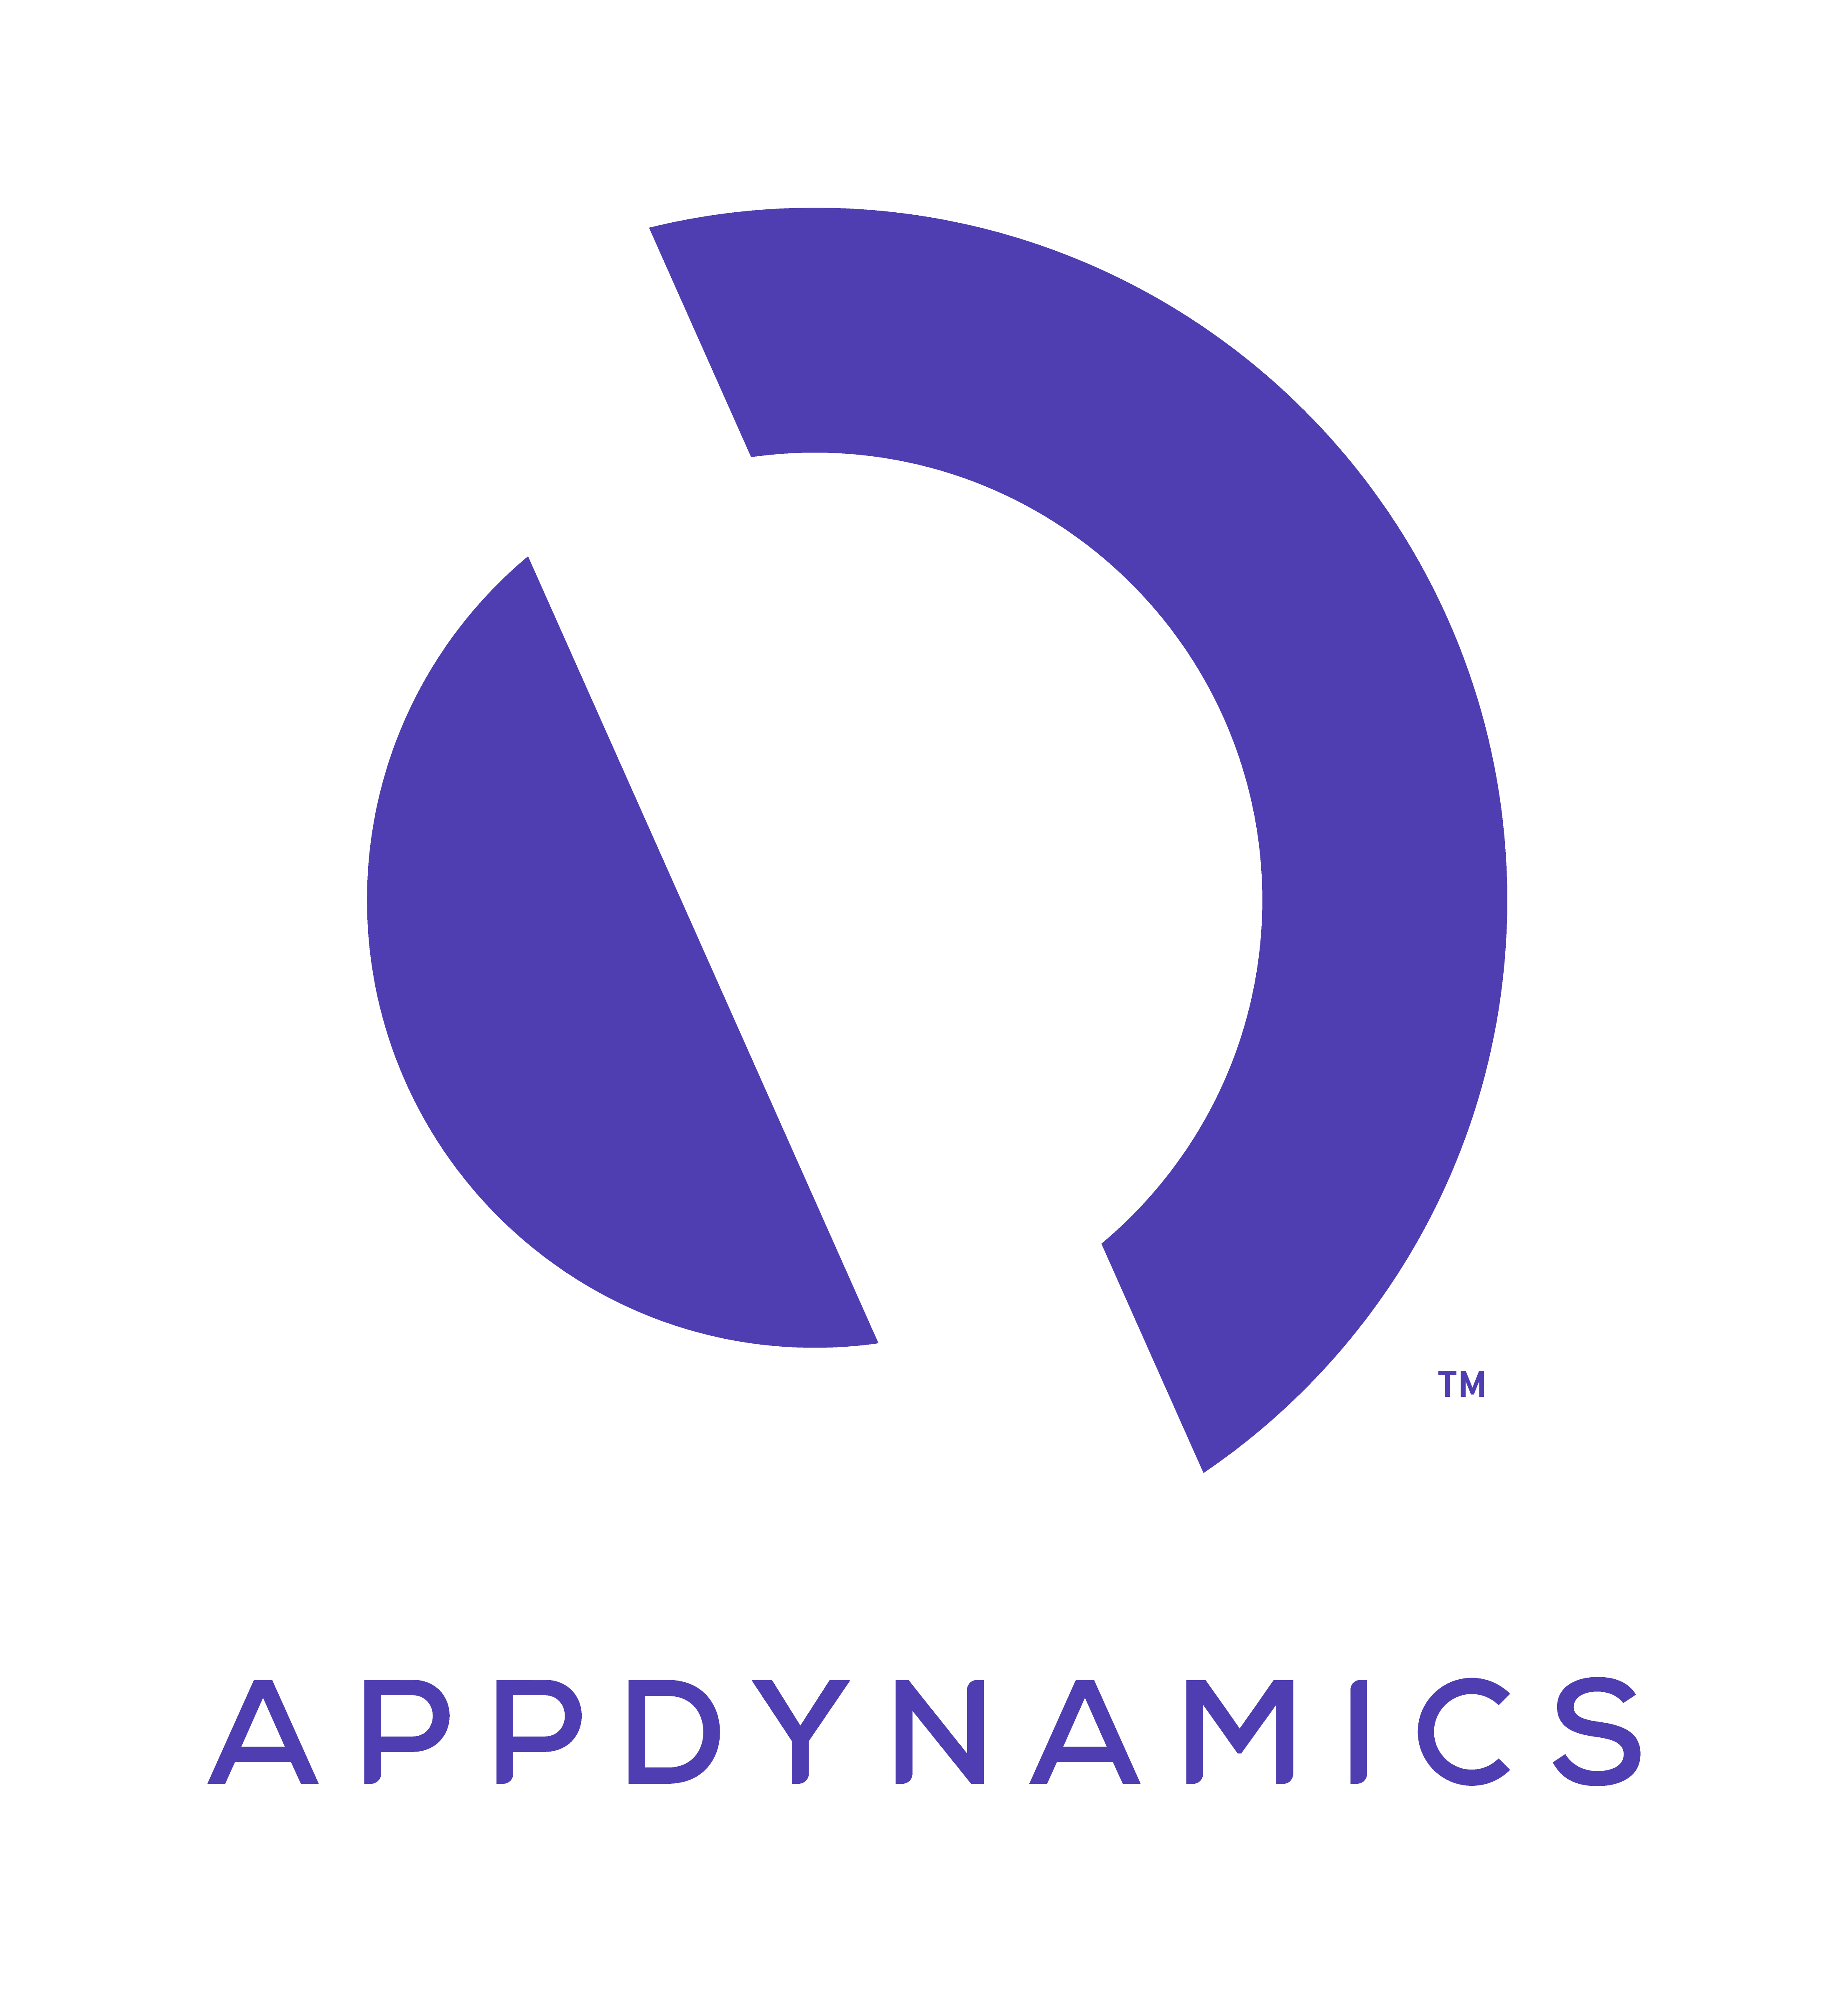 APPDYNAMICS. APPDYNAMICS logo. APPDYNAMICS ads.